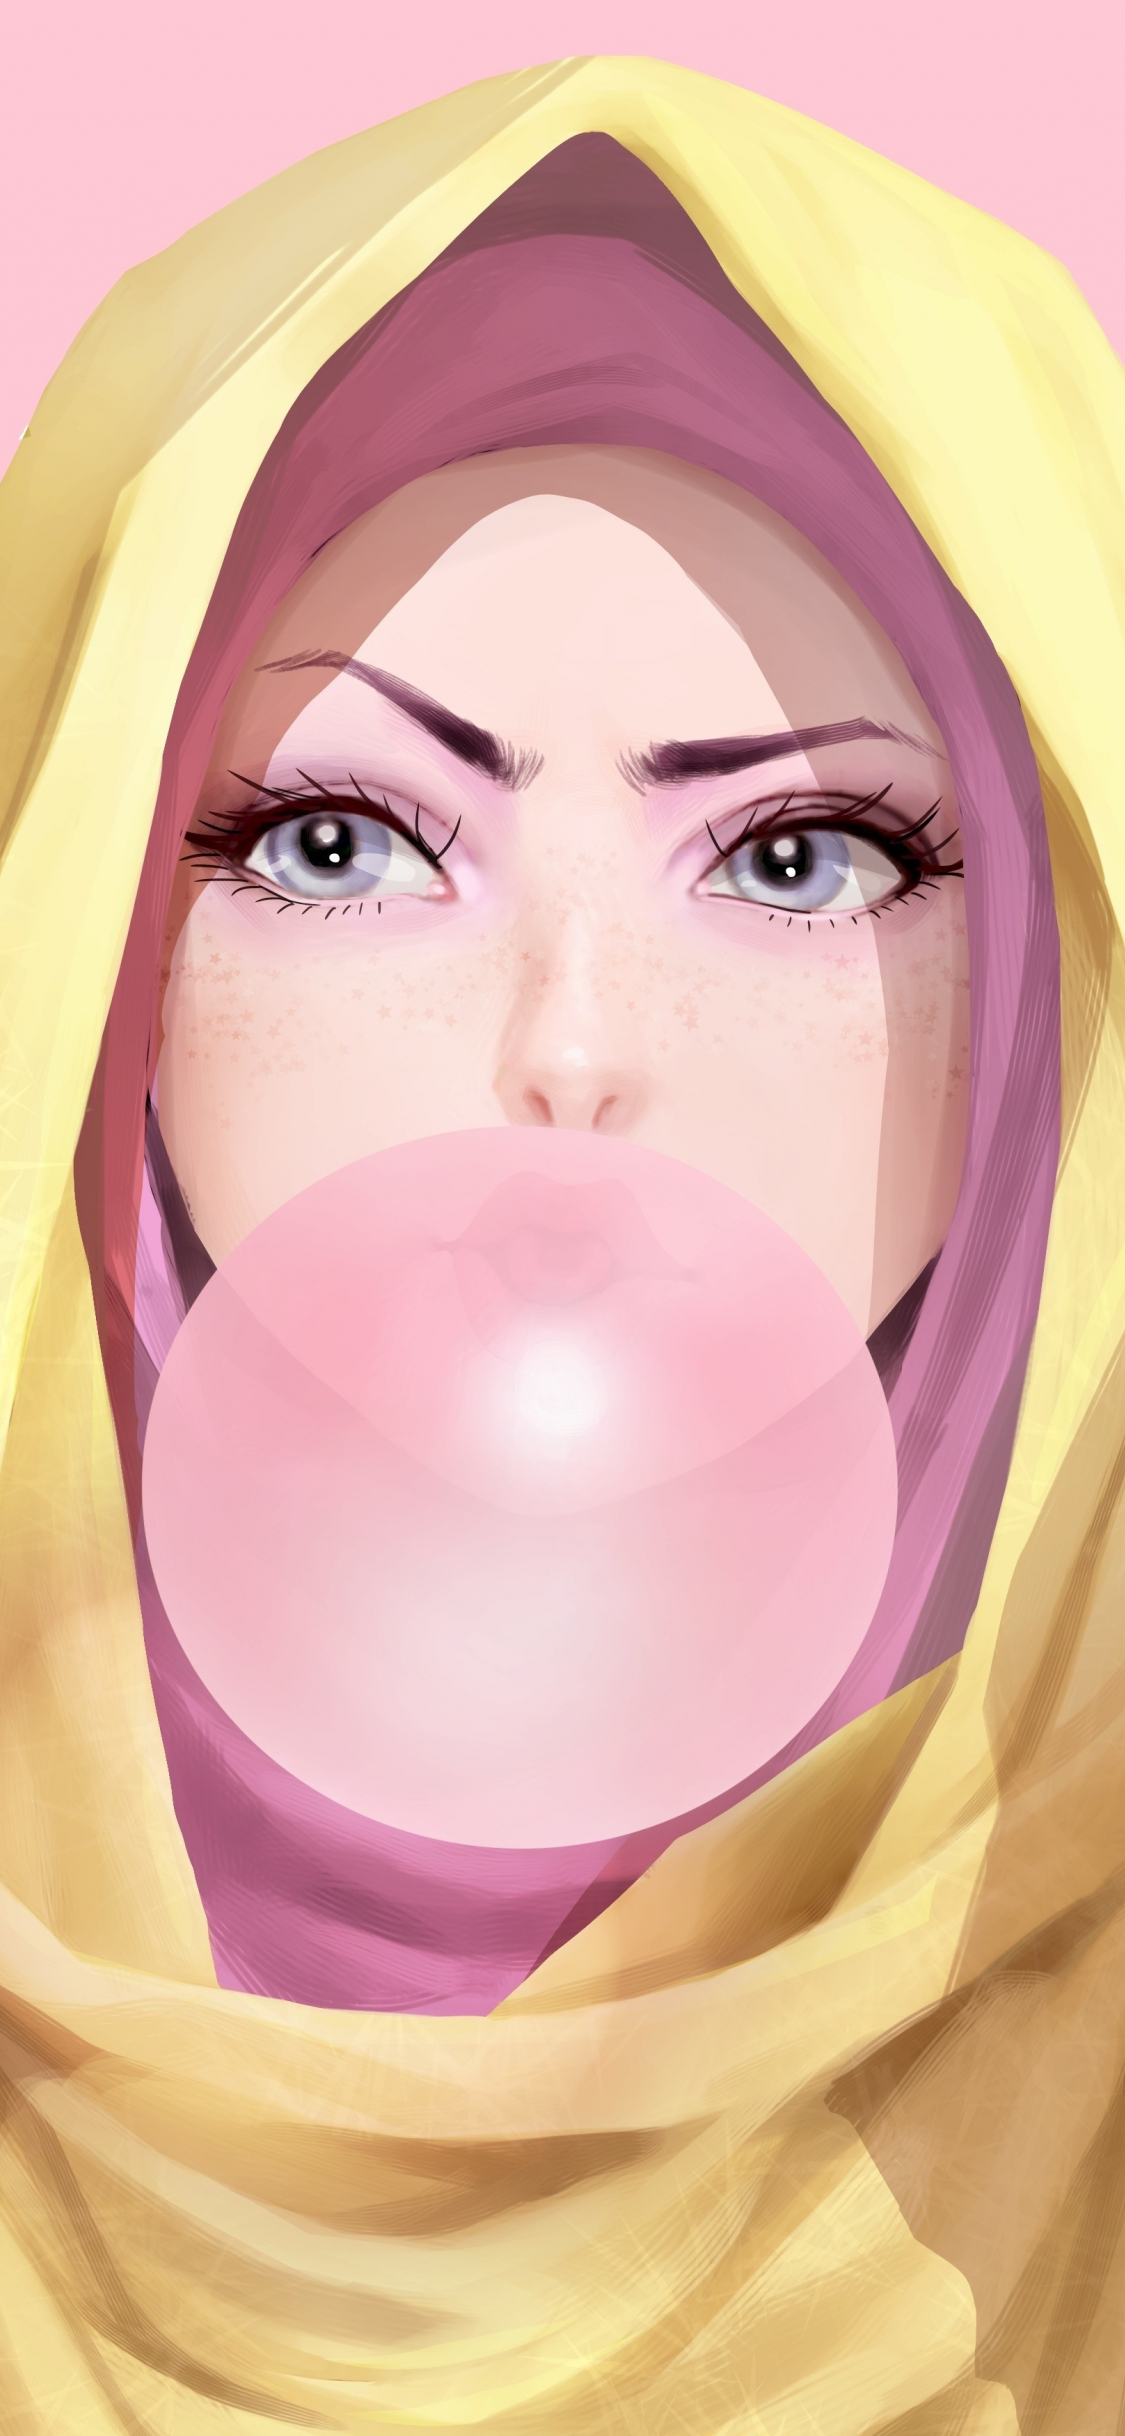 Download 1125x2436 Wallpaper Girl In Hood Bubble Gum Original